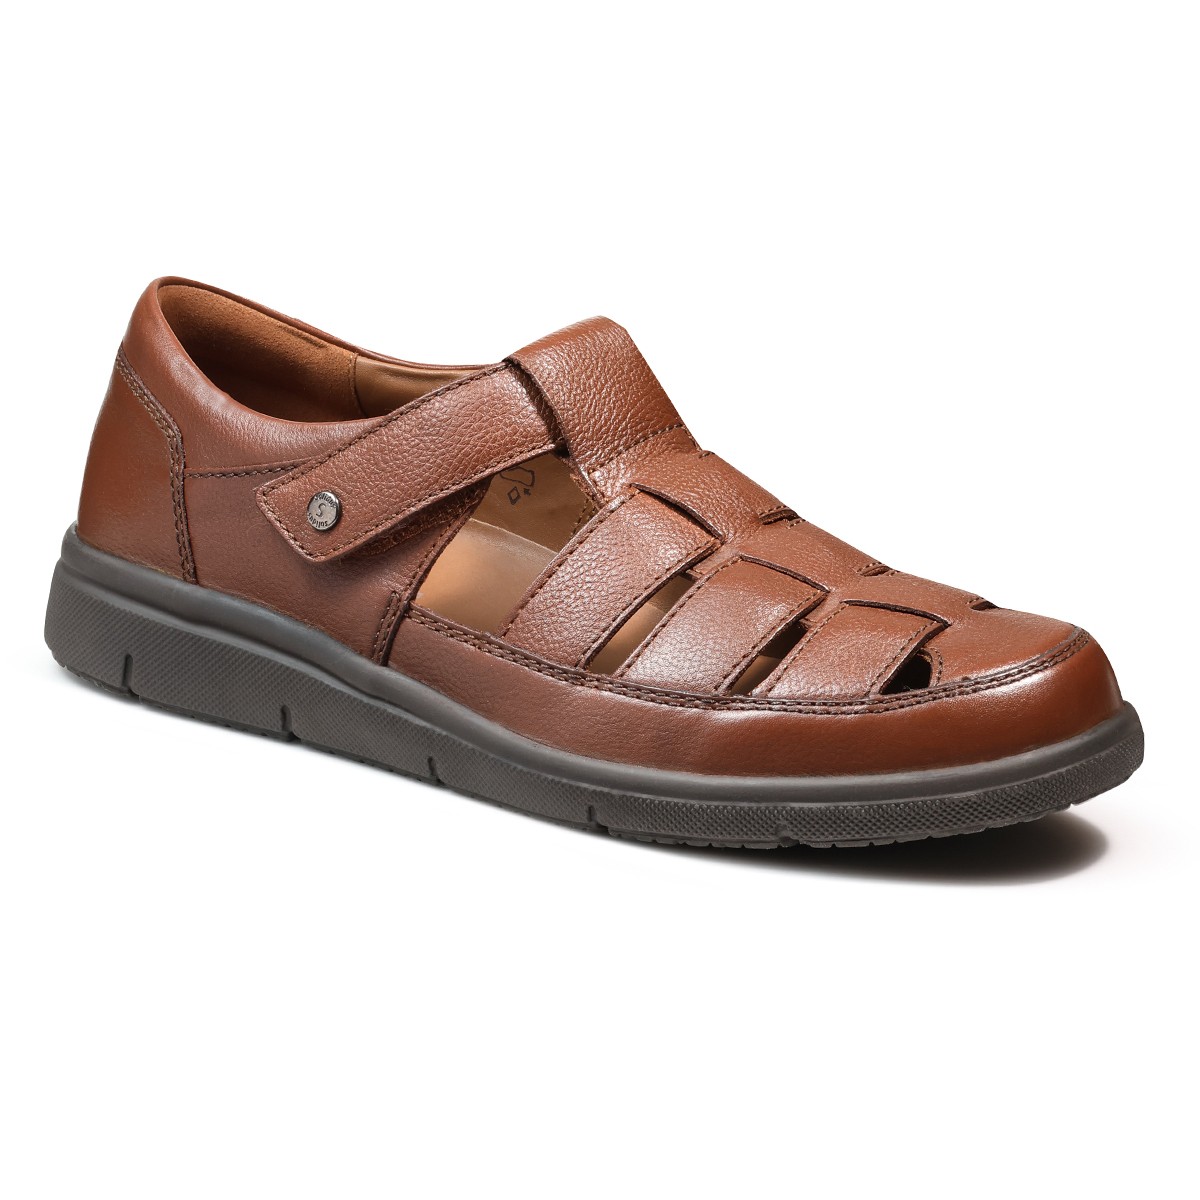 мужские летние туфли hardy solidus коричневые Мужские летние туфли Hardy, Solidus, коричневые